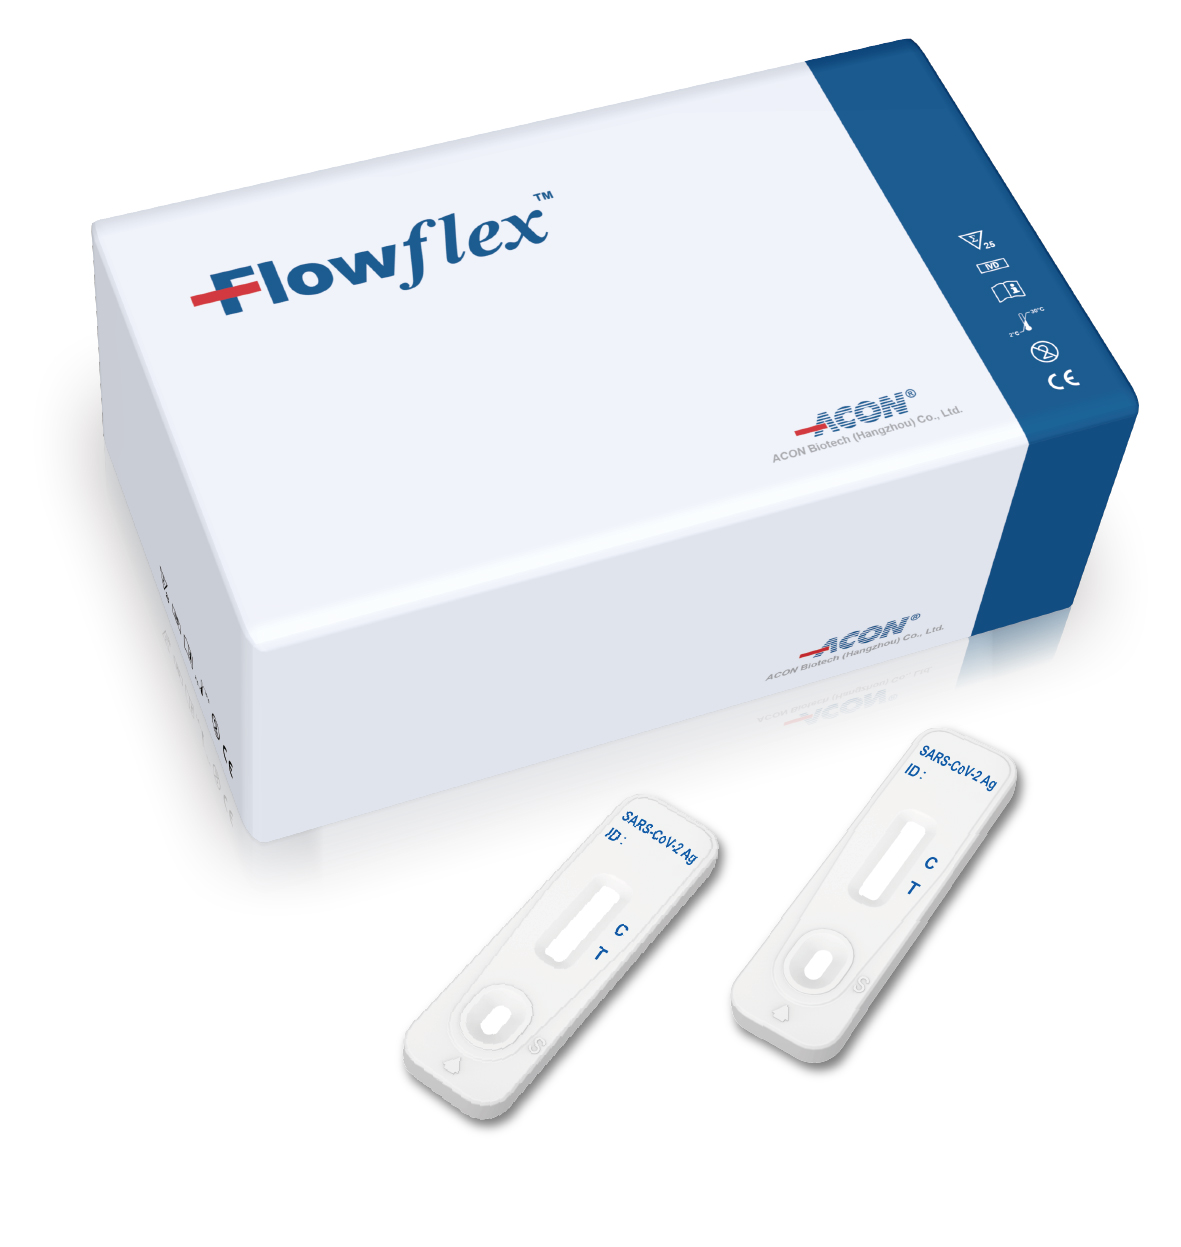 Flowflex SARS-CoV-2 được bán tại Nhà thuốc Tiện Lợi - Pharmacity ảnh 1